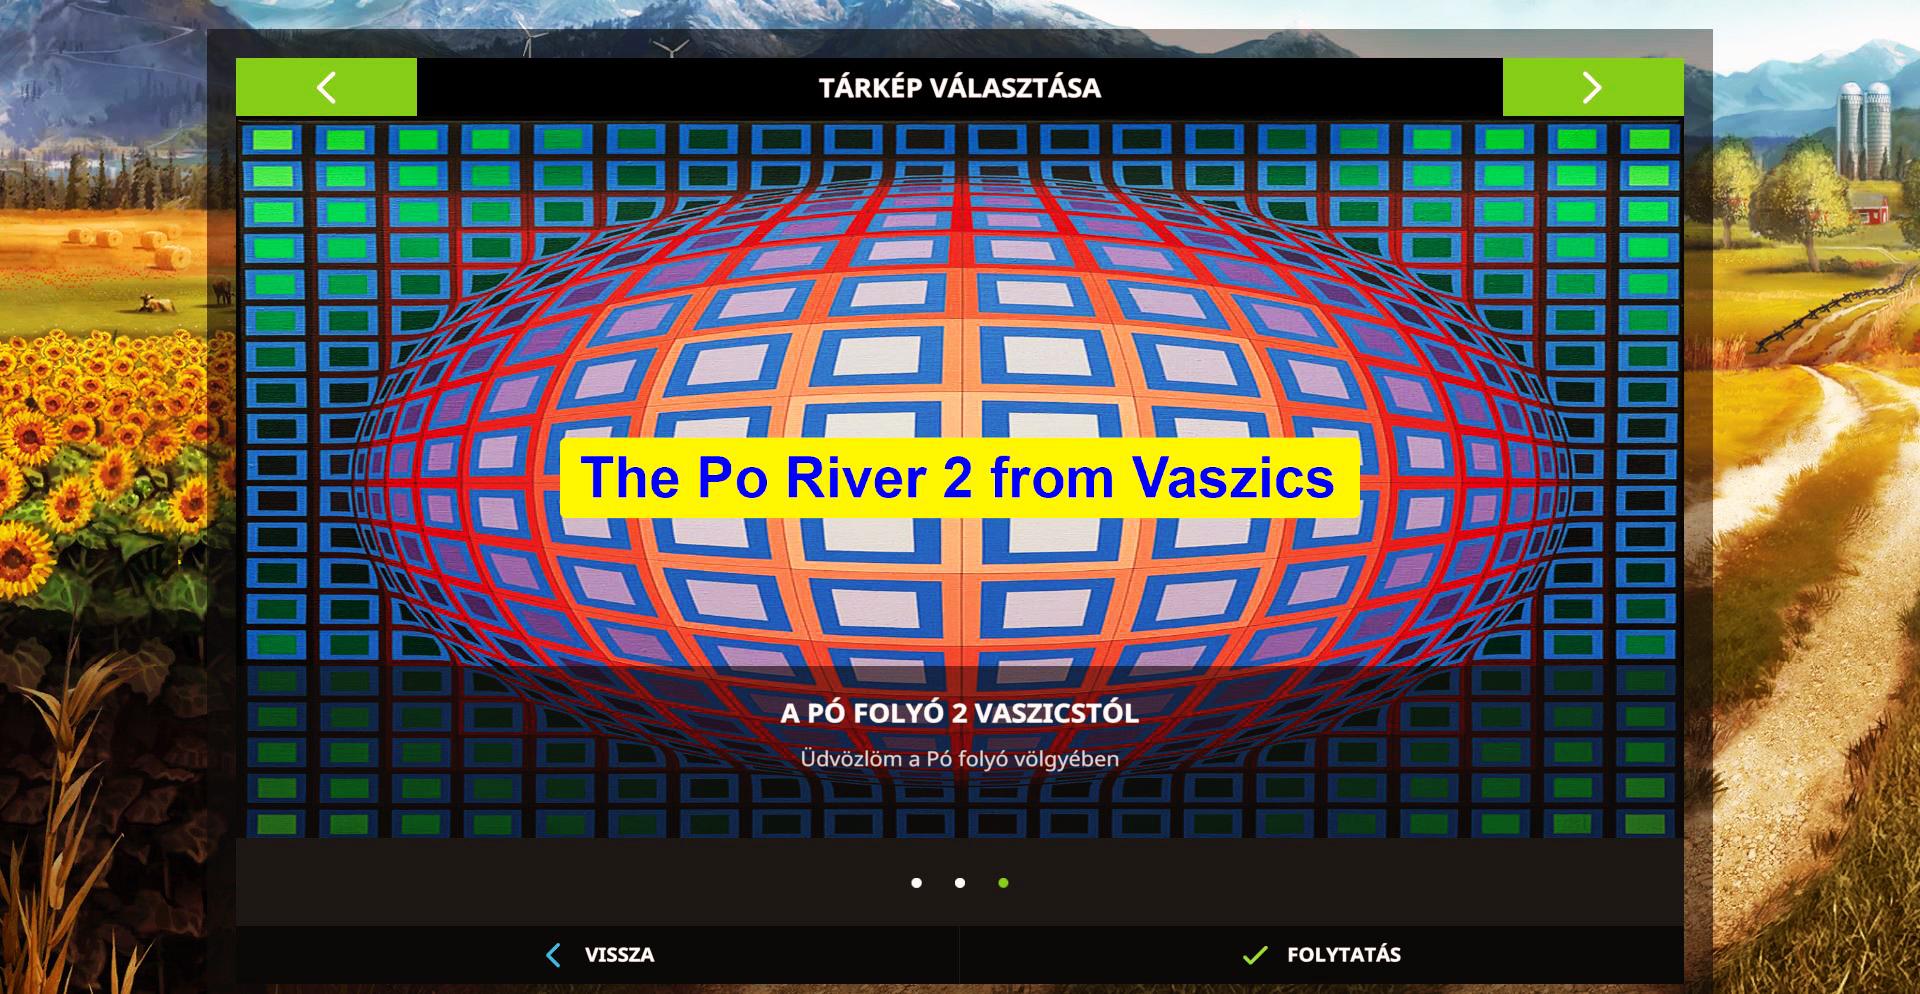 FS17 - The Po River 2 From Vaszics Hotfix2